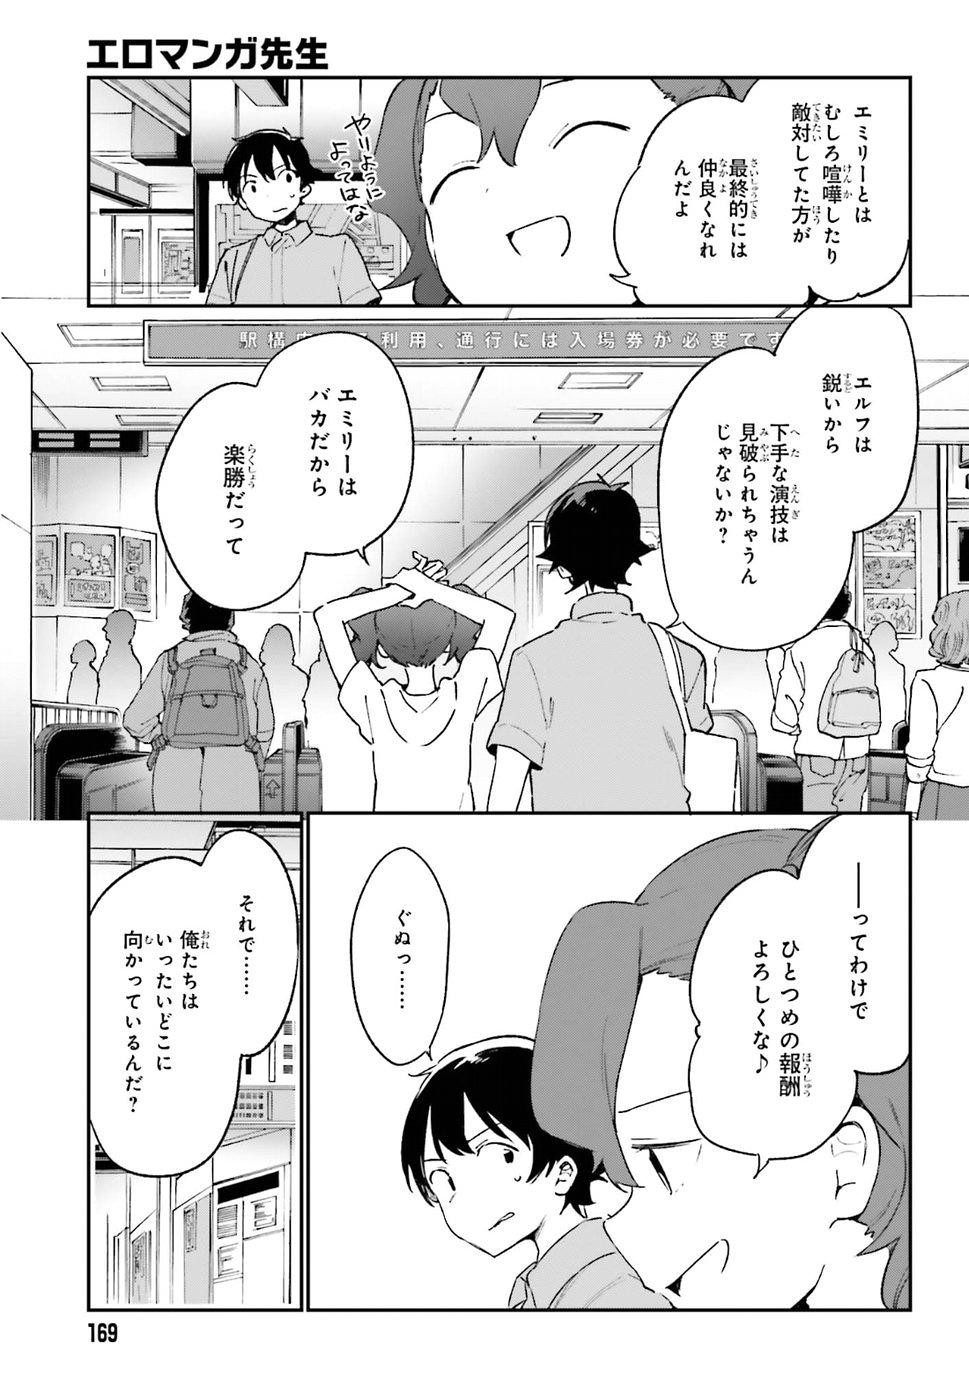 Ero Manga Sensei - Chapter 48 - Page 21